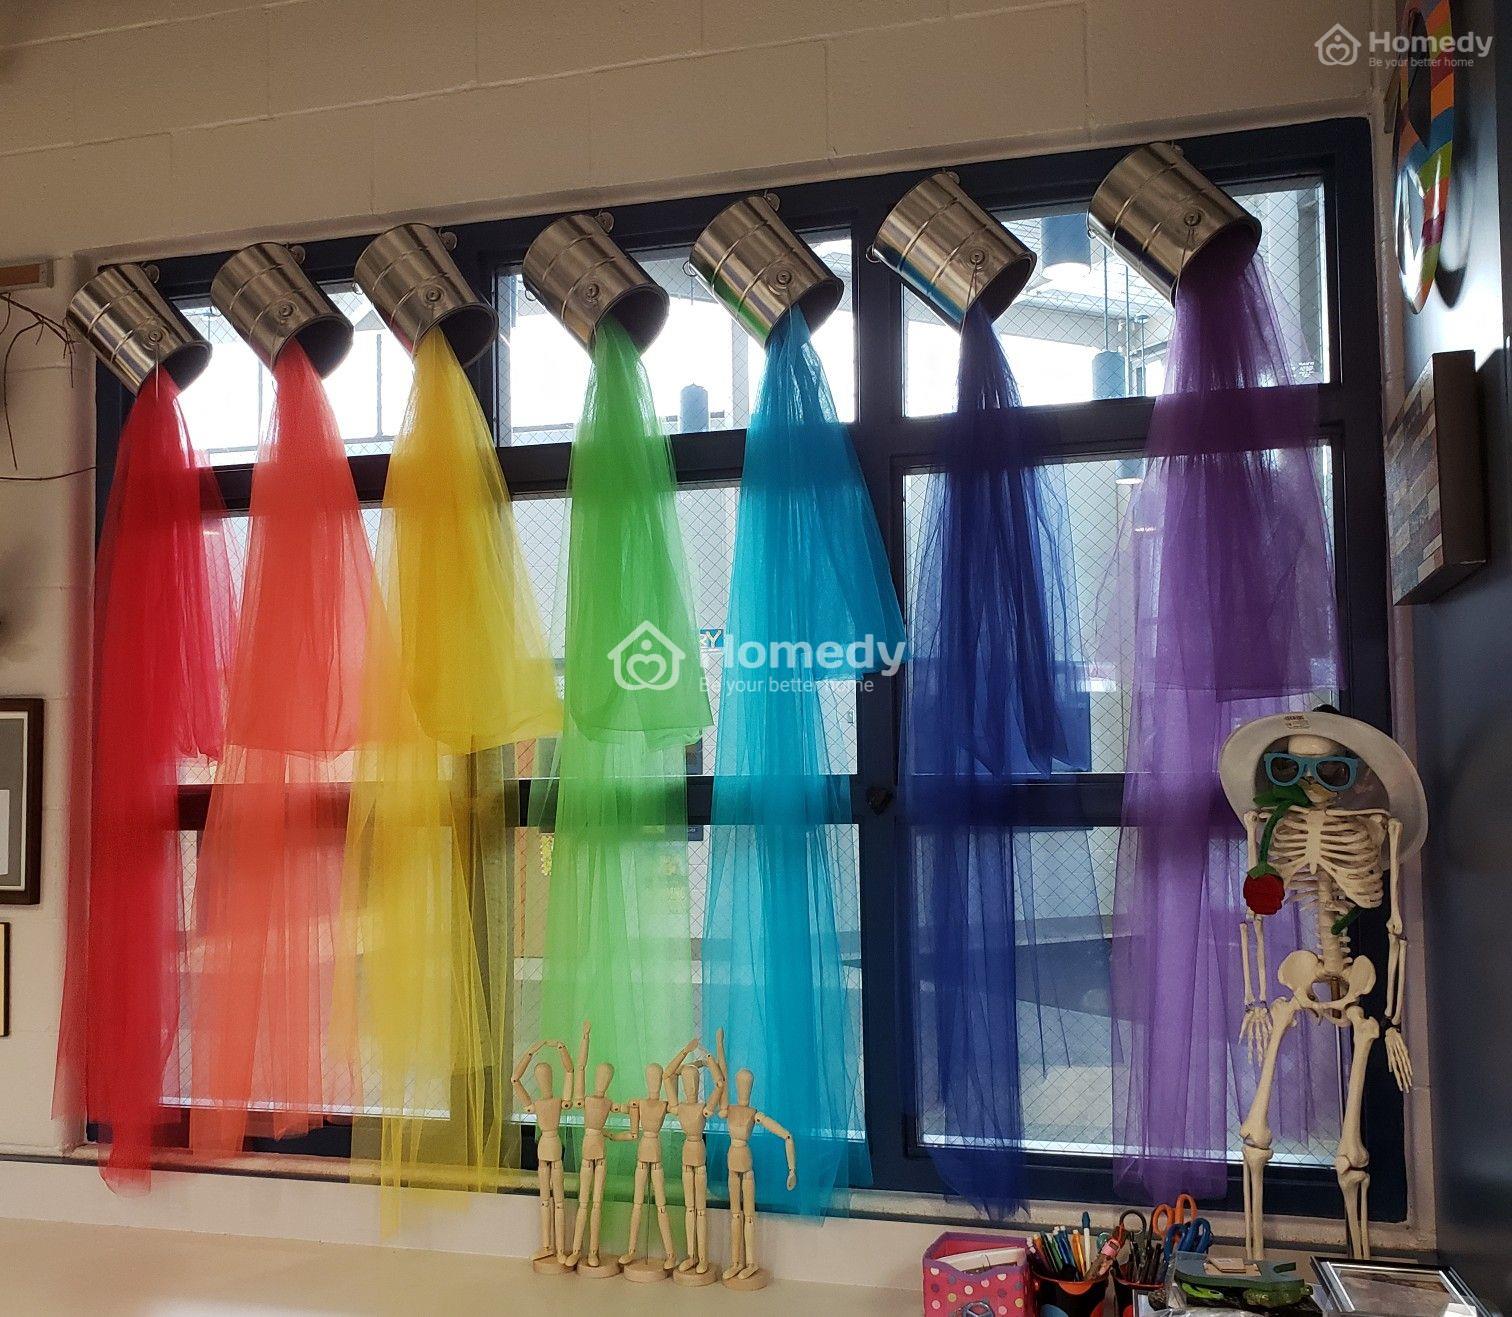 Những học sinh tiểu học sẽ được trải nghiệm một không gian học tập mới nhẹ nhàng và dễ chịu với các trang trí cửa sổ lớp học tiểu học đầy màu sắc và sinh động. Chúng tôi tin rằng việc trang trí cửa sổ sẽ giúp các em hiểu về màu sắc và tạo ra sự yêu thích hơn đối với học tập.